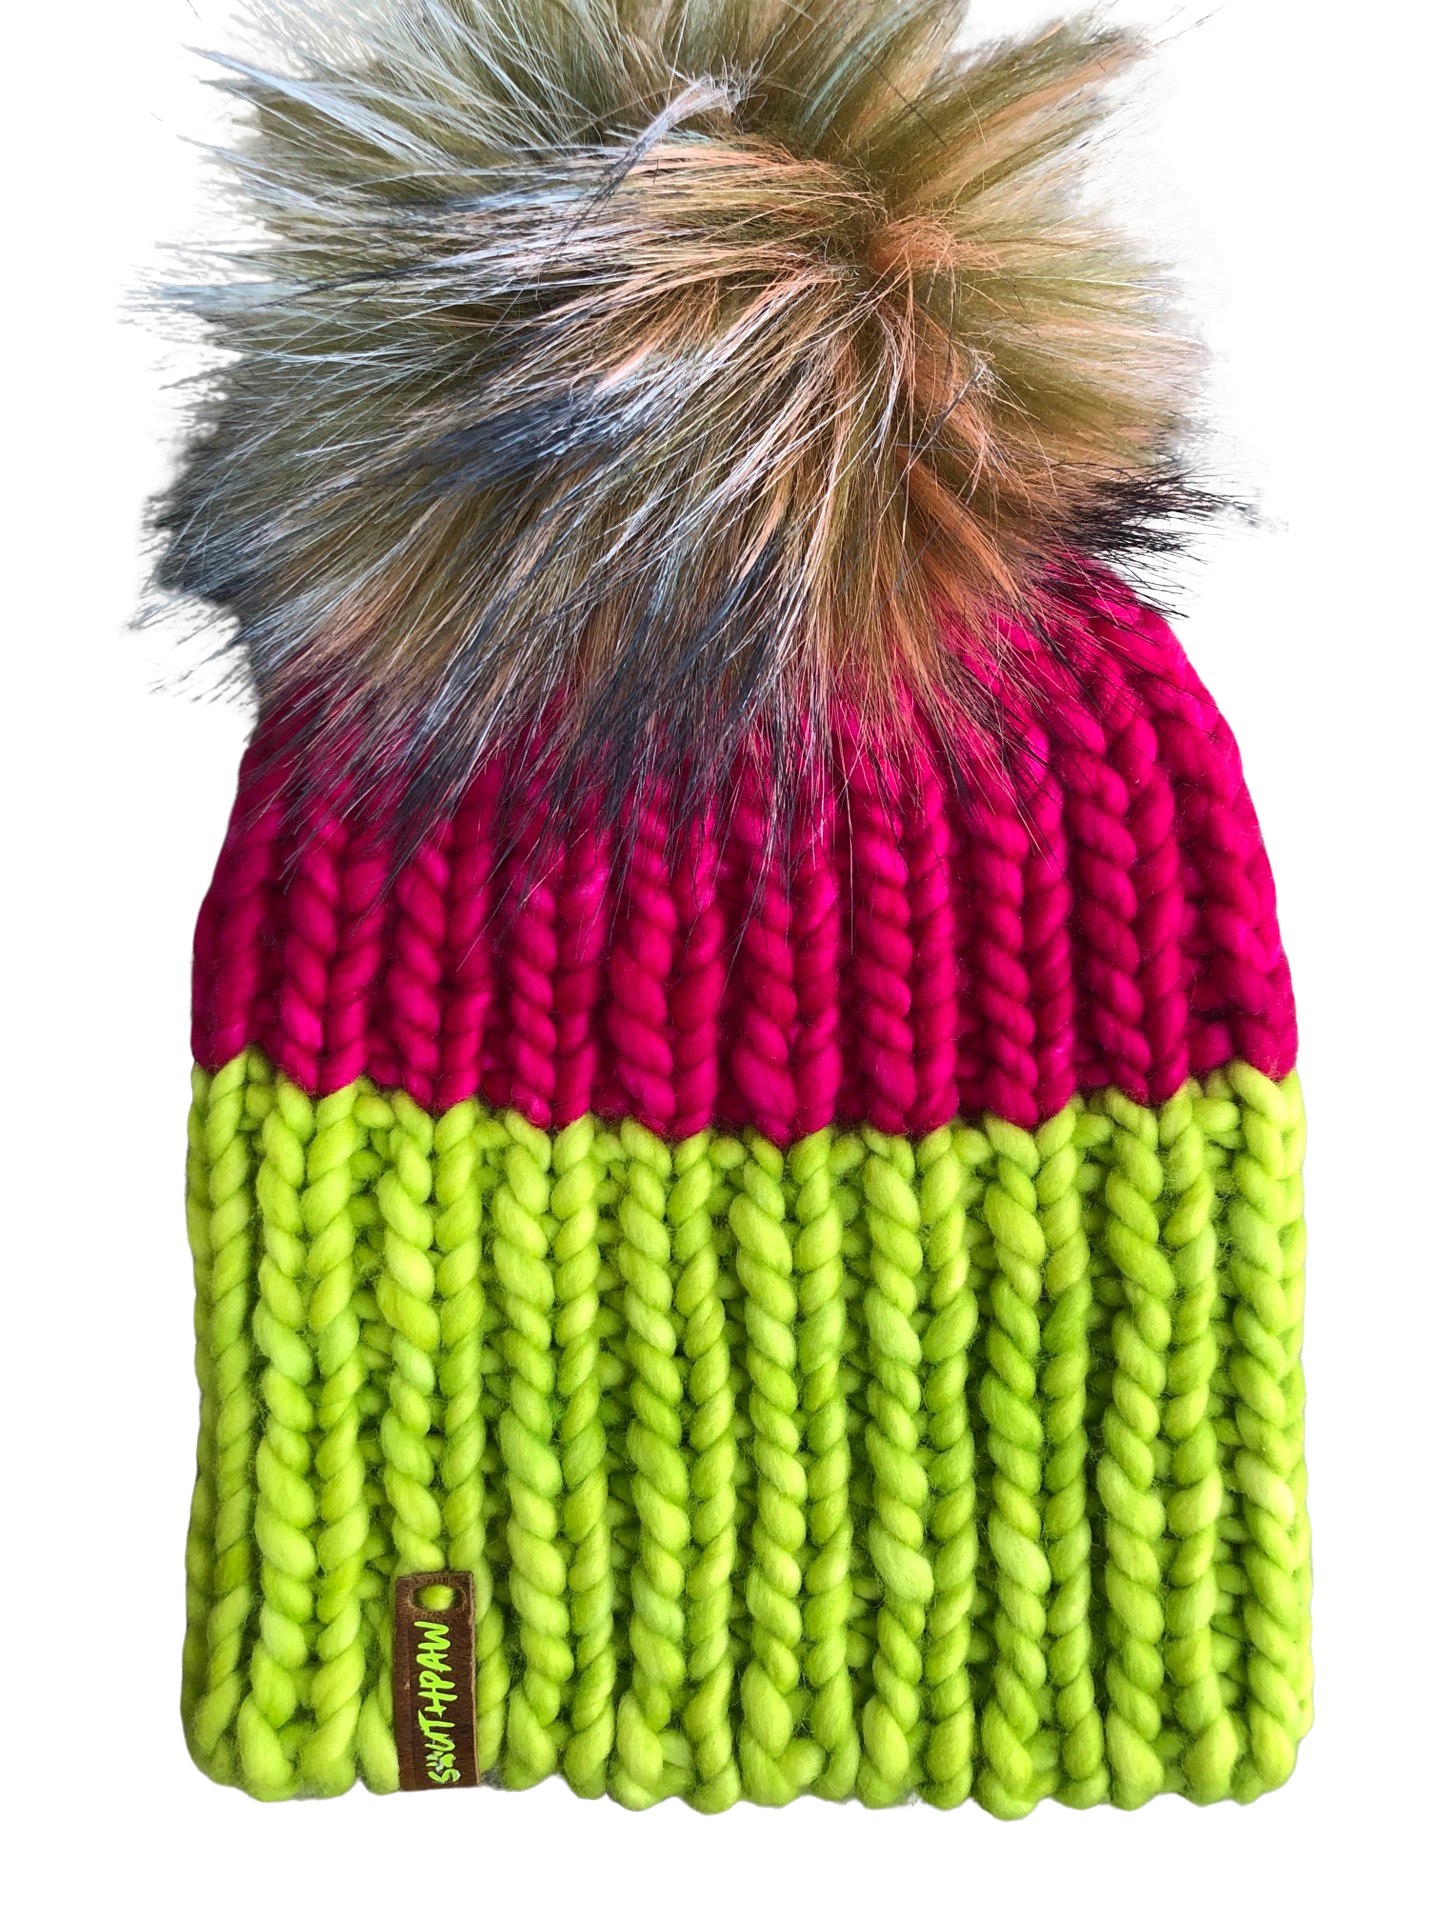 Bringing Back Neon Beanie | Neon Fuchsia and Green Merino Wool Hat